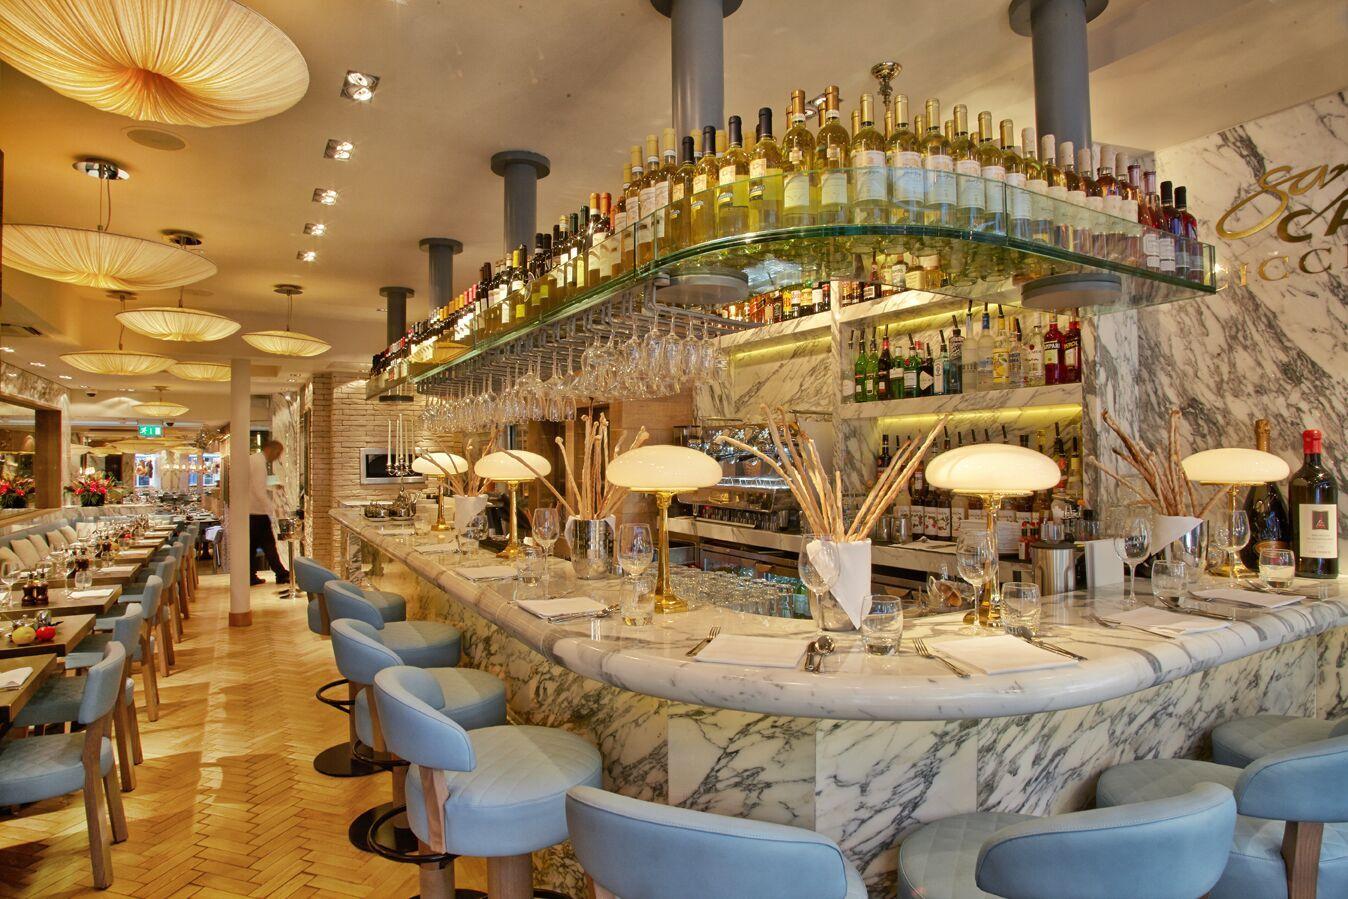 Tischleuchte mit Opalglasschirm, abgebildet in Messing. Ursprünglich für das von Josef Hoffmann im Jahr 1900 entworfene Spitzer-Haus

Die meisten Komponenten entsprechen den UL-Vorschriften, gegen Aufpreis führen wir die UL-Liste und das Label für